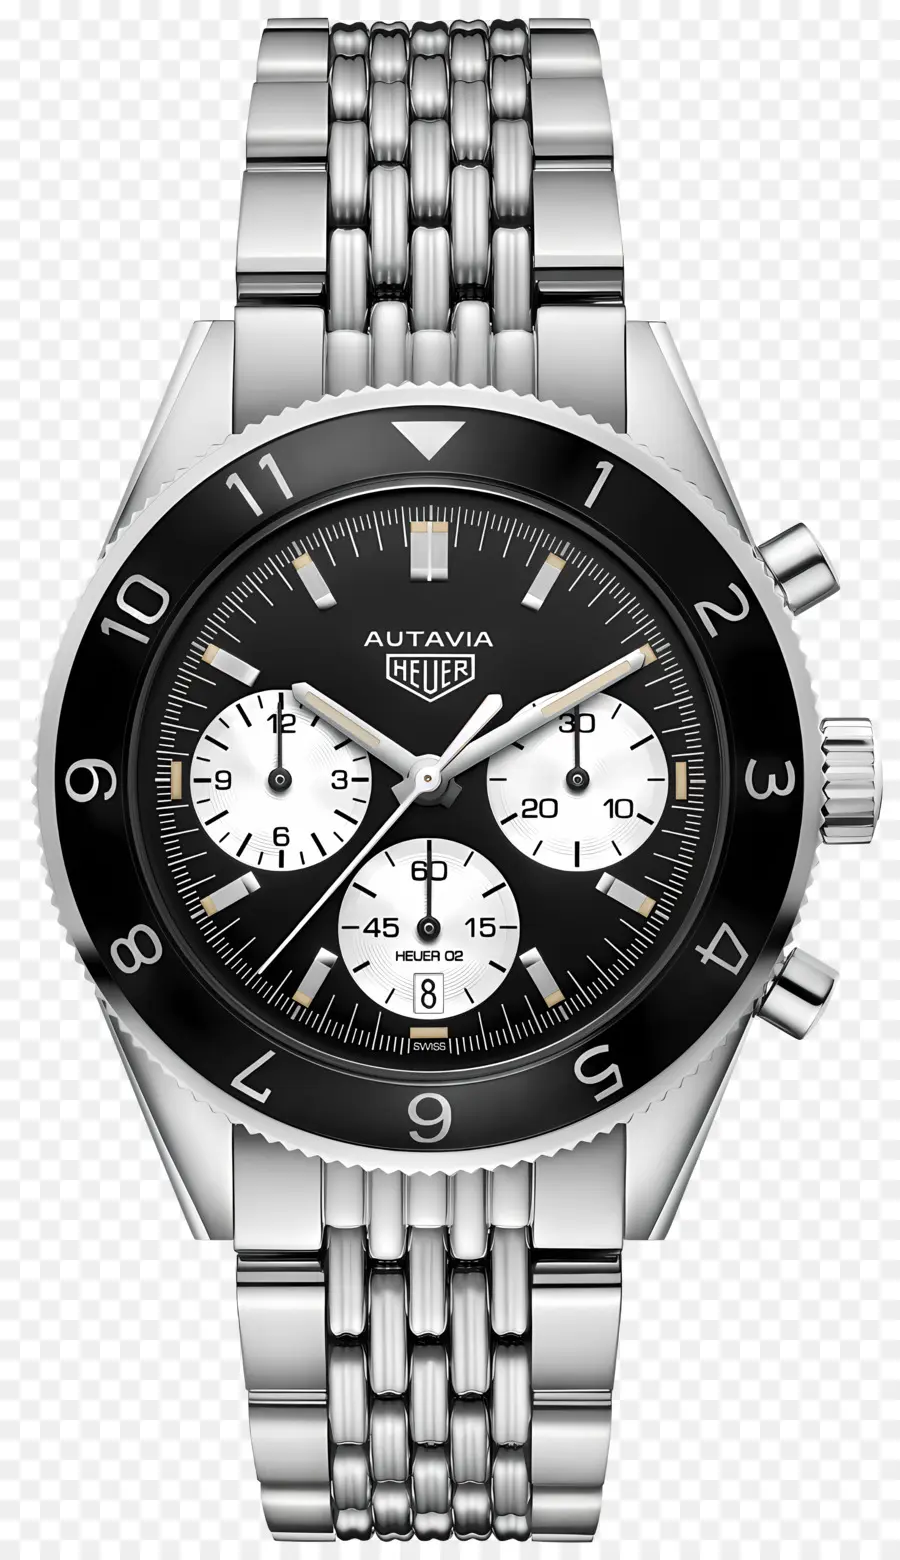 Tag Heuer Schweizer Luxus Uhren Armbanduhr Edelstahl schwarzes Gesicht - Schlanke schwarze und weiße Diamantuhr